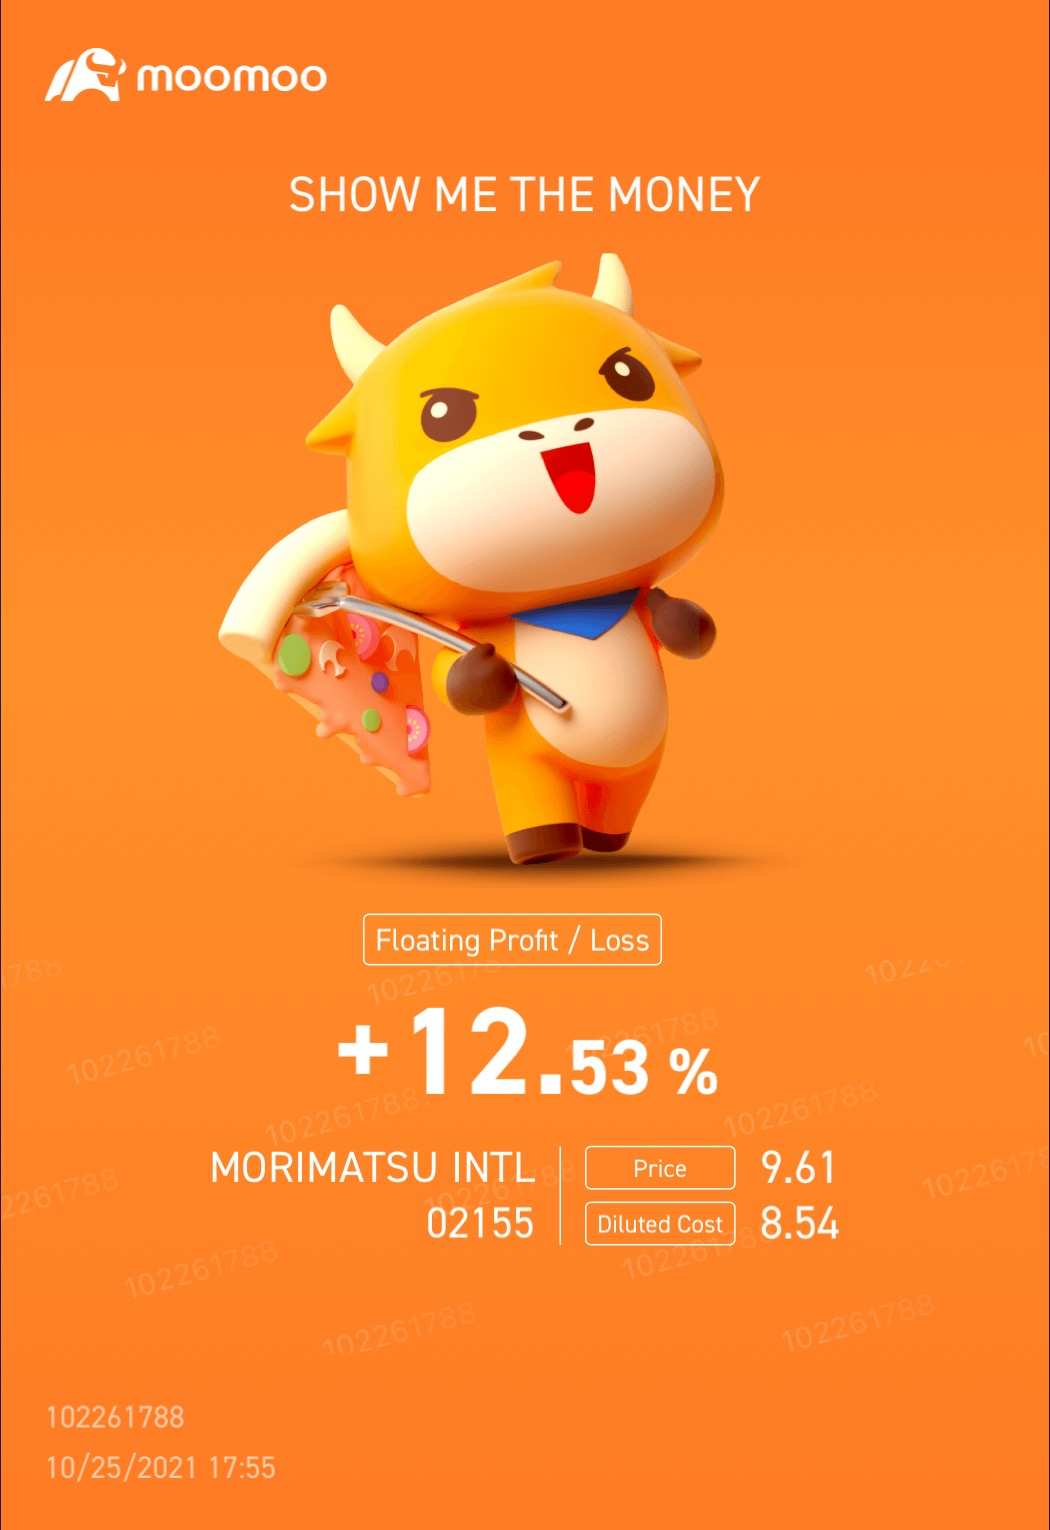 $MORIMATSU INTL(02155.HK)$